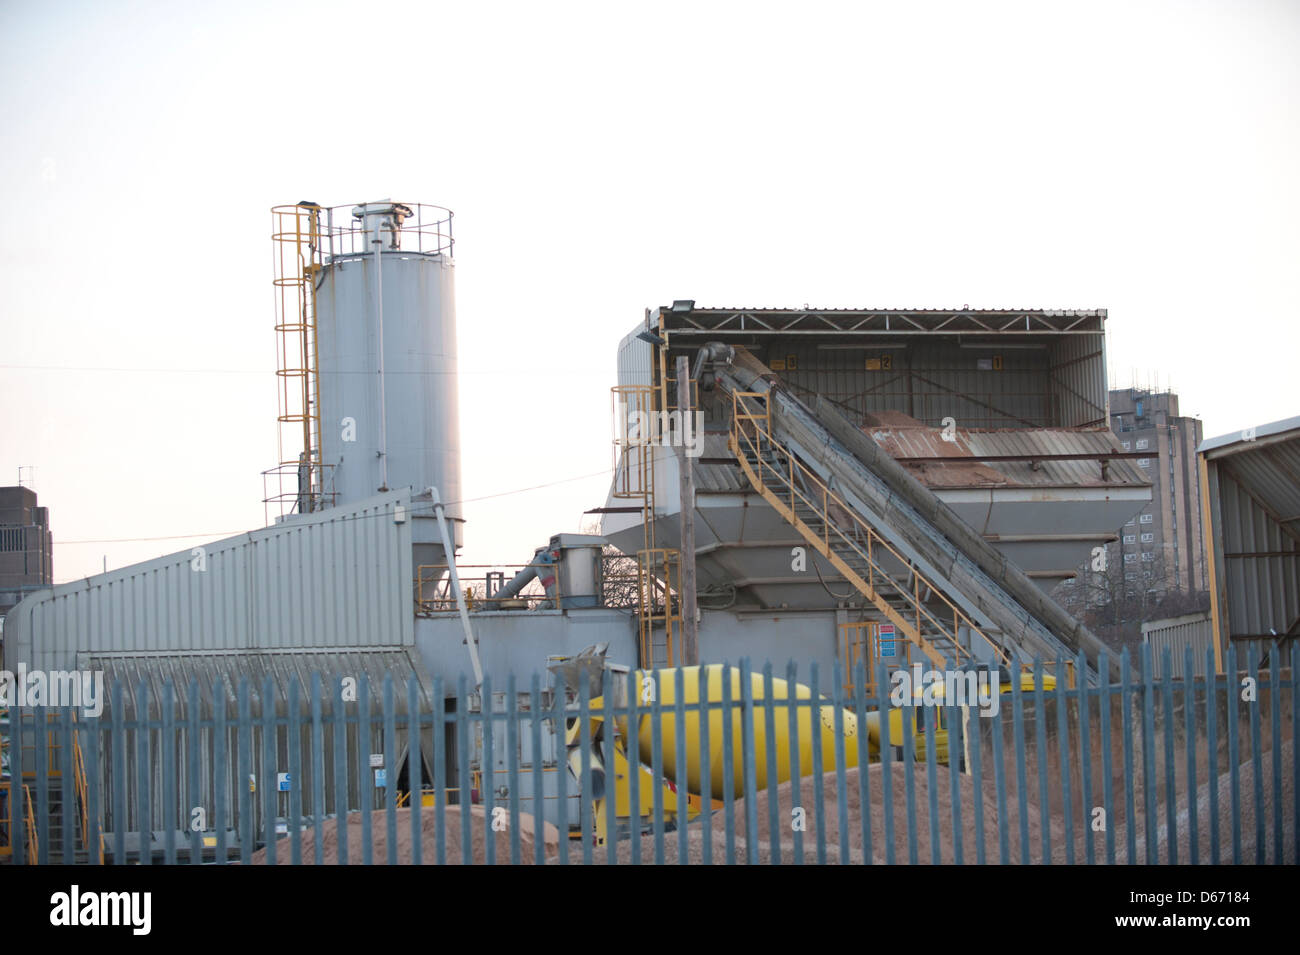 Industrieanlage in Fabrikanlagen, Derby, UK. Stockfoto